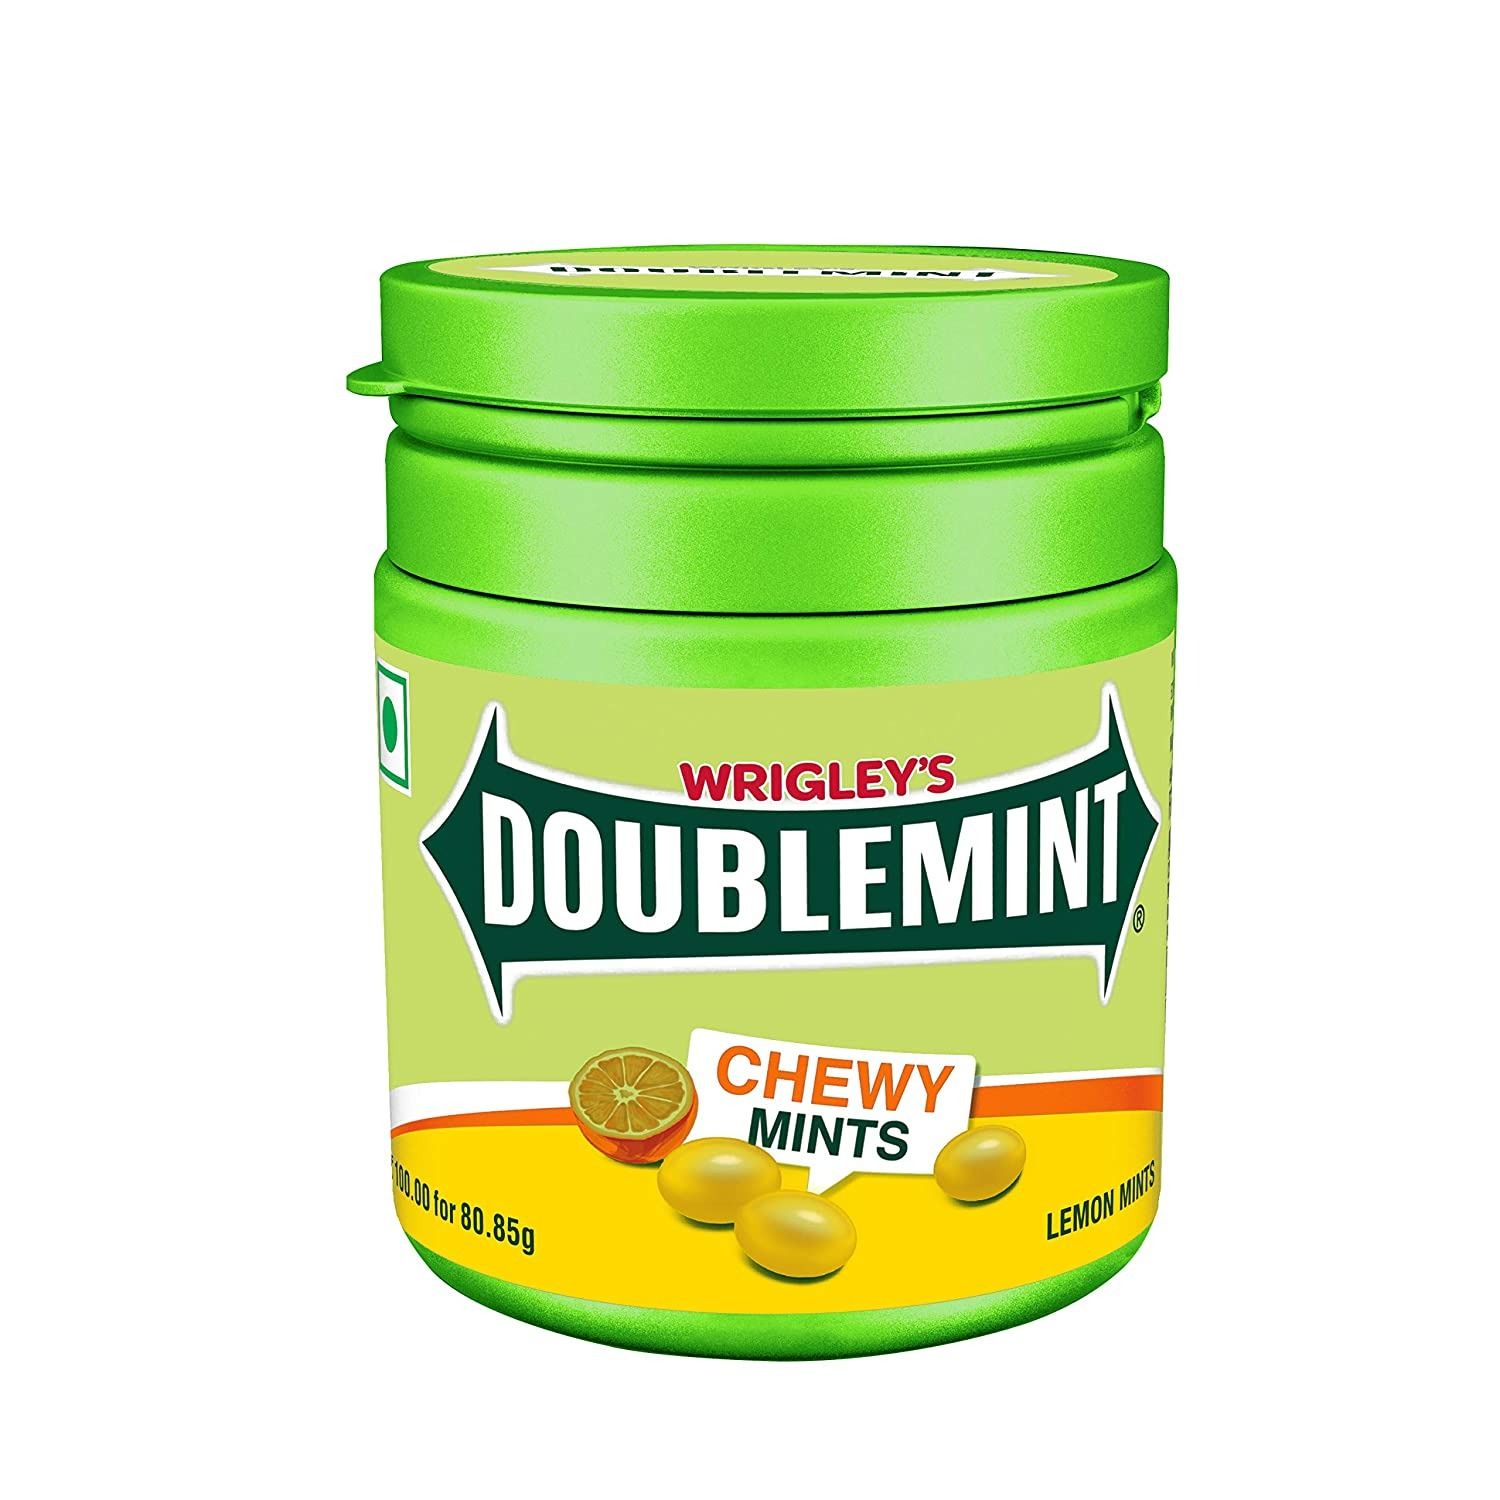 Wrigley's Doublemint Chewy Lemon Mints , 80.85 gm